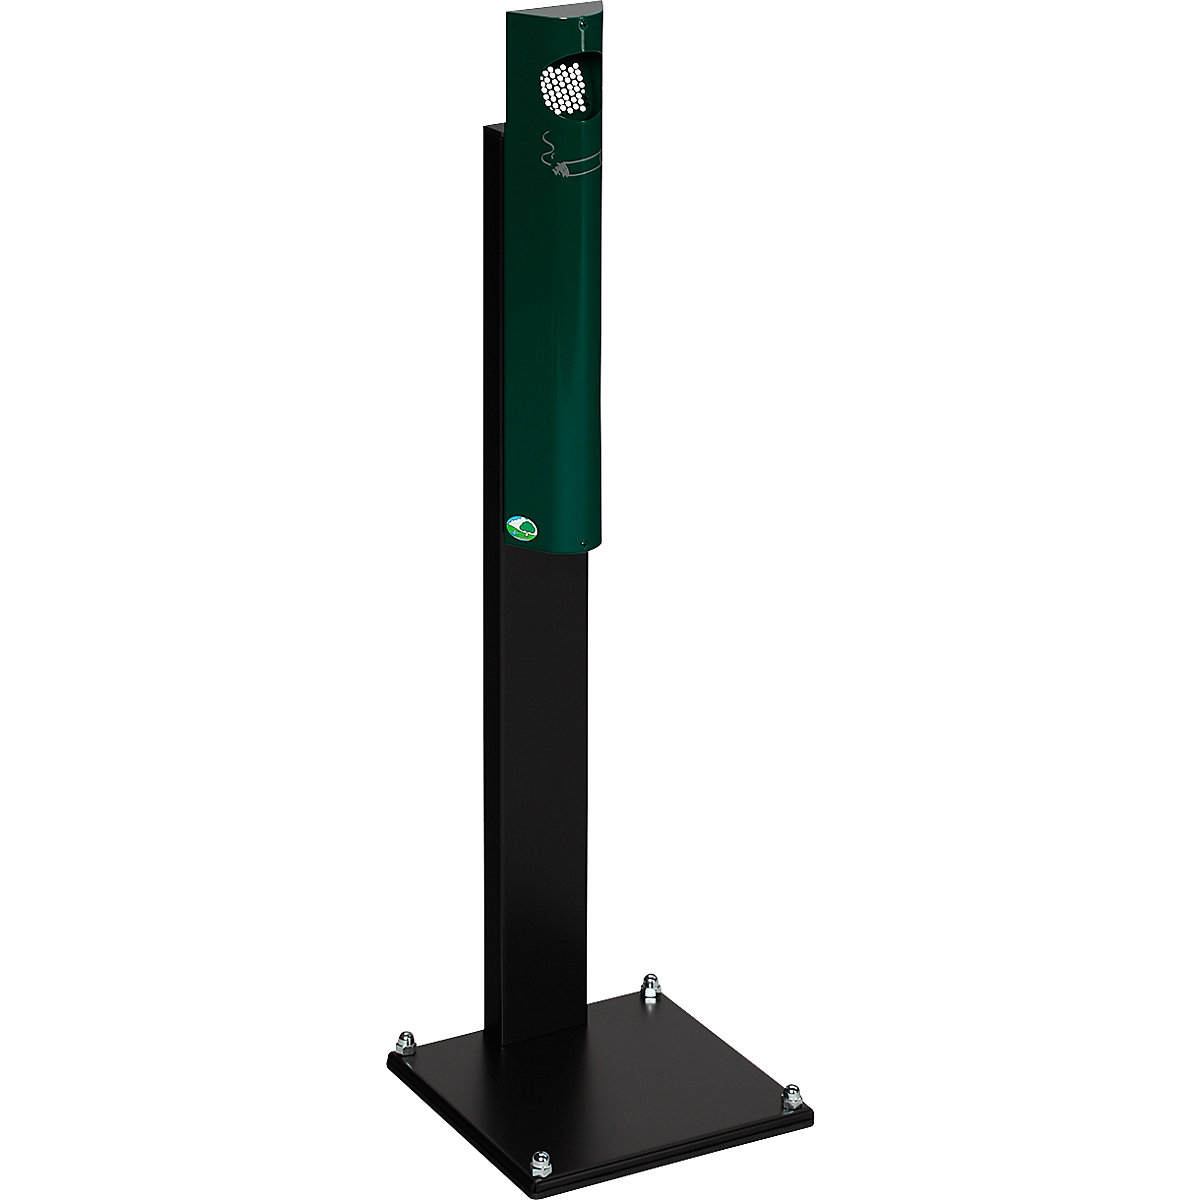 VAR – Pedestal ashtray, sheet steel, HxWxD 1250 x 310 x 310 mm, moss green